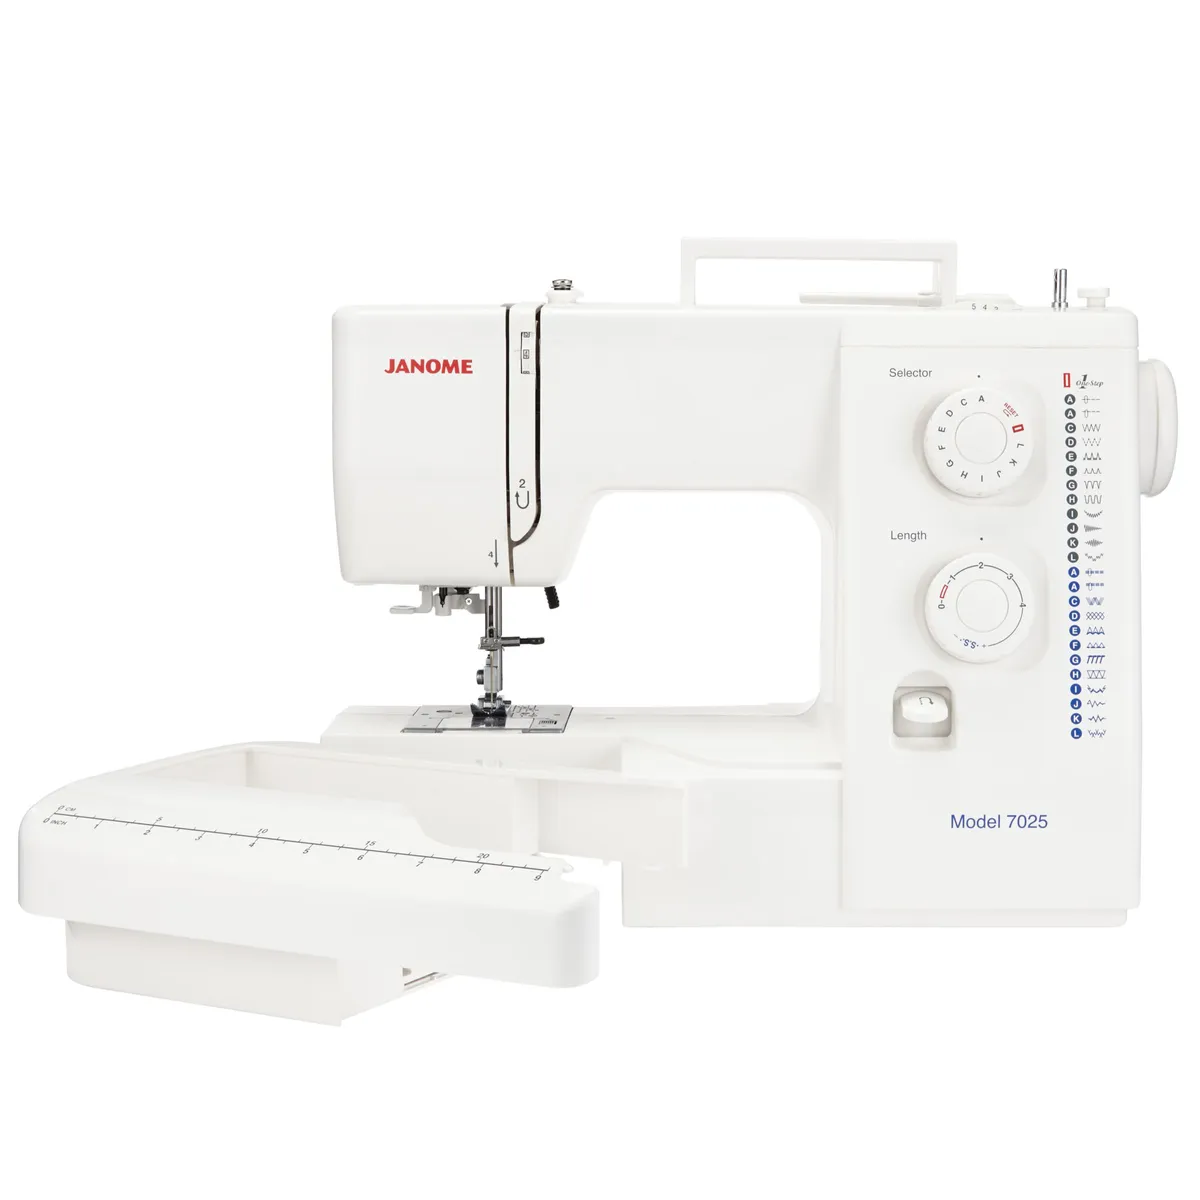 Janome 7025 sewing machine